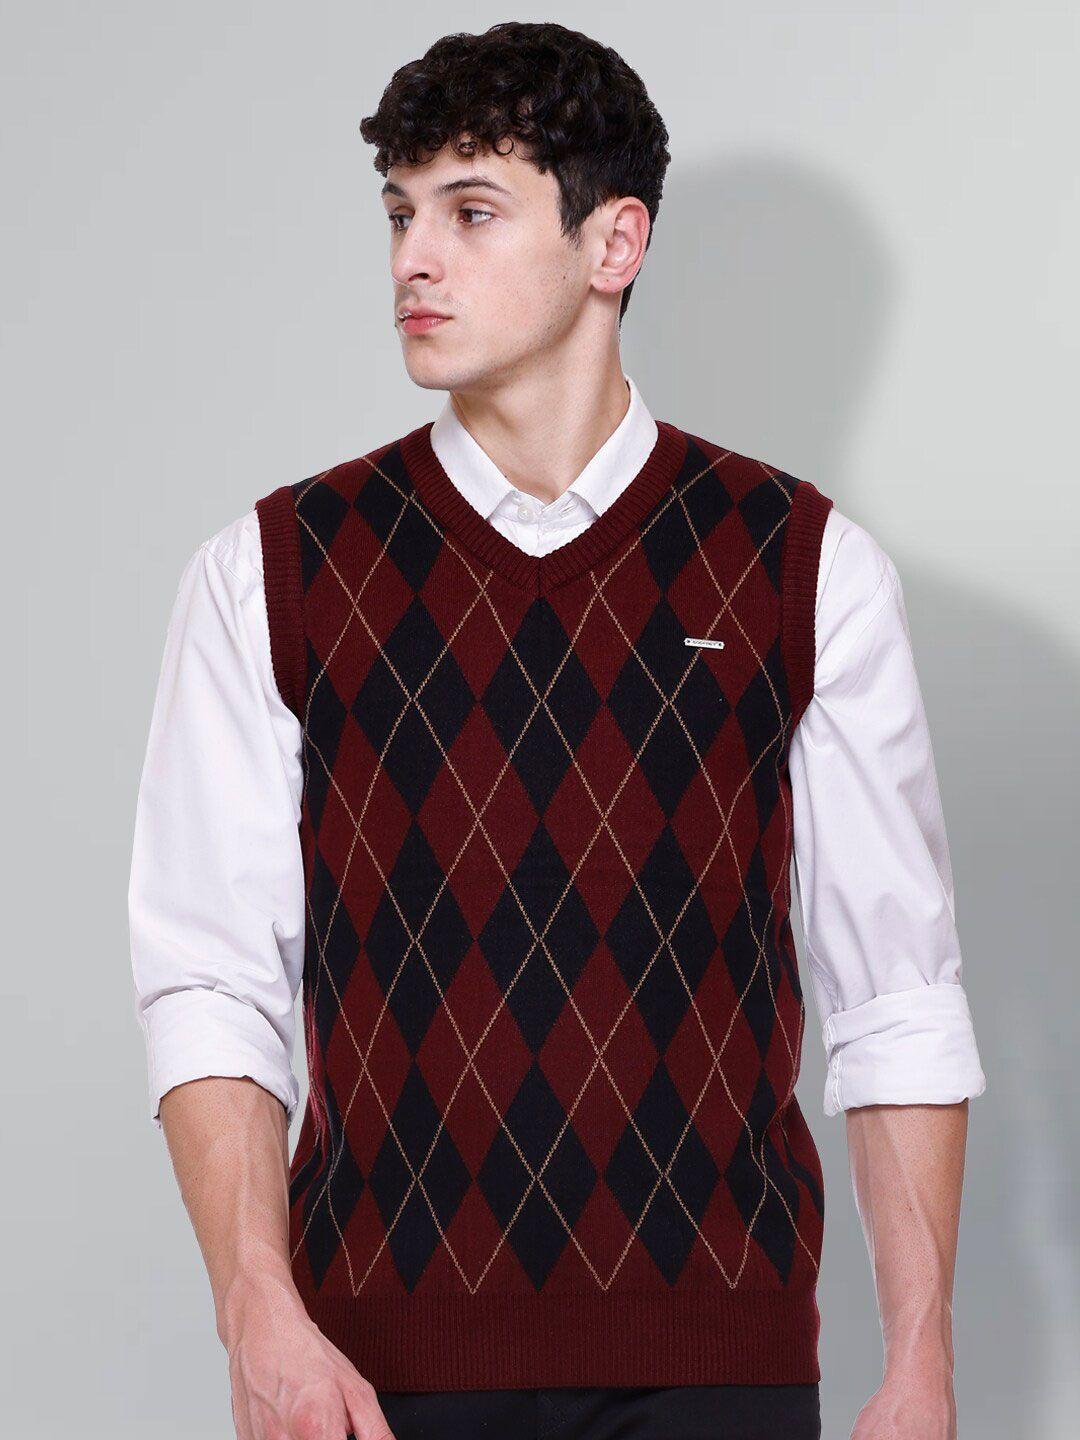 godfrey men maroon & black printed woollen sweater vest